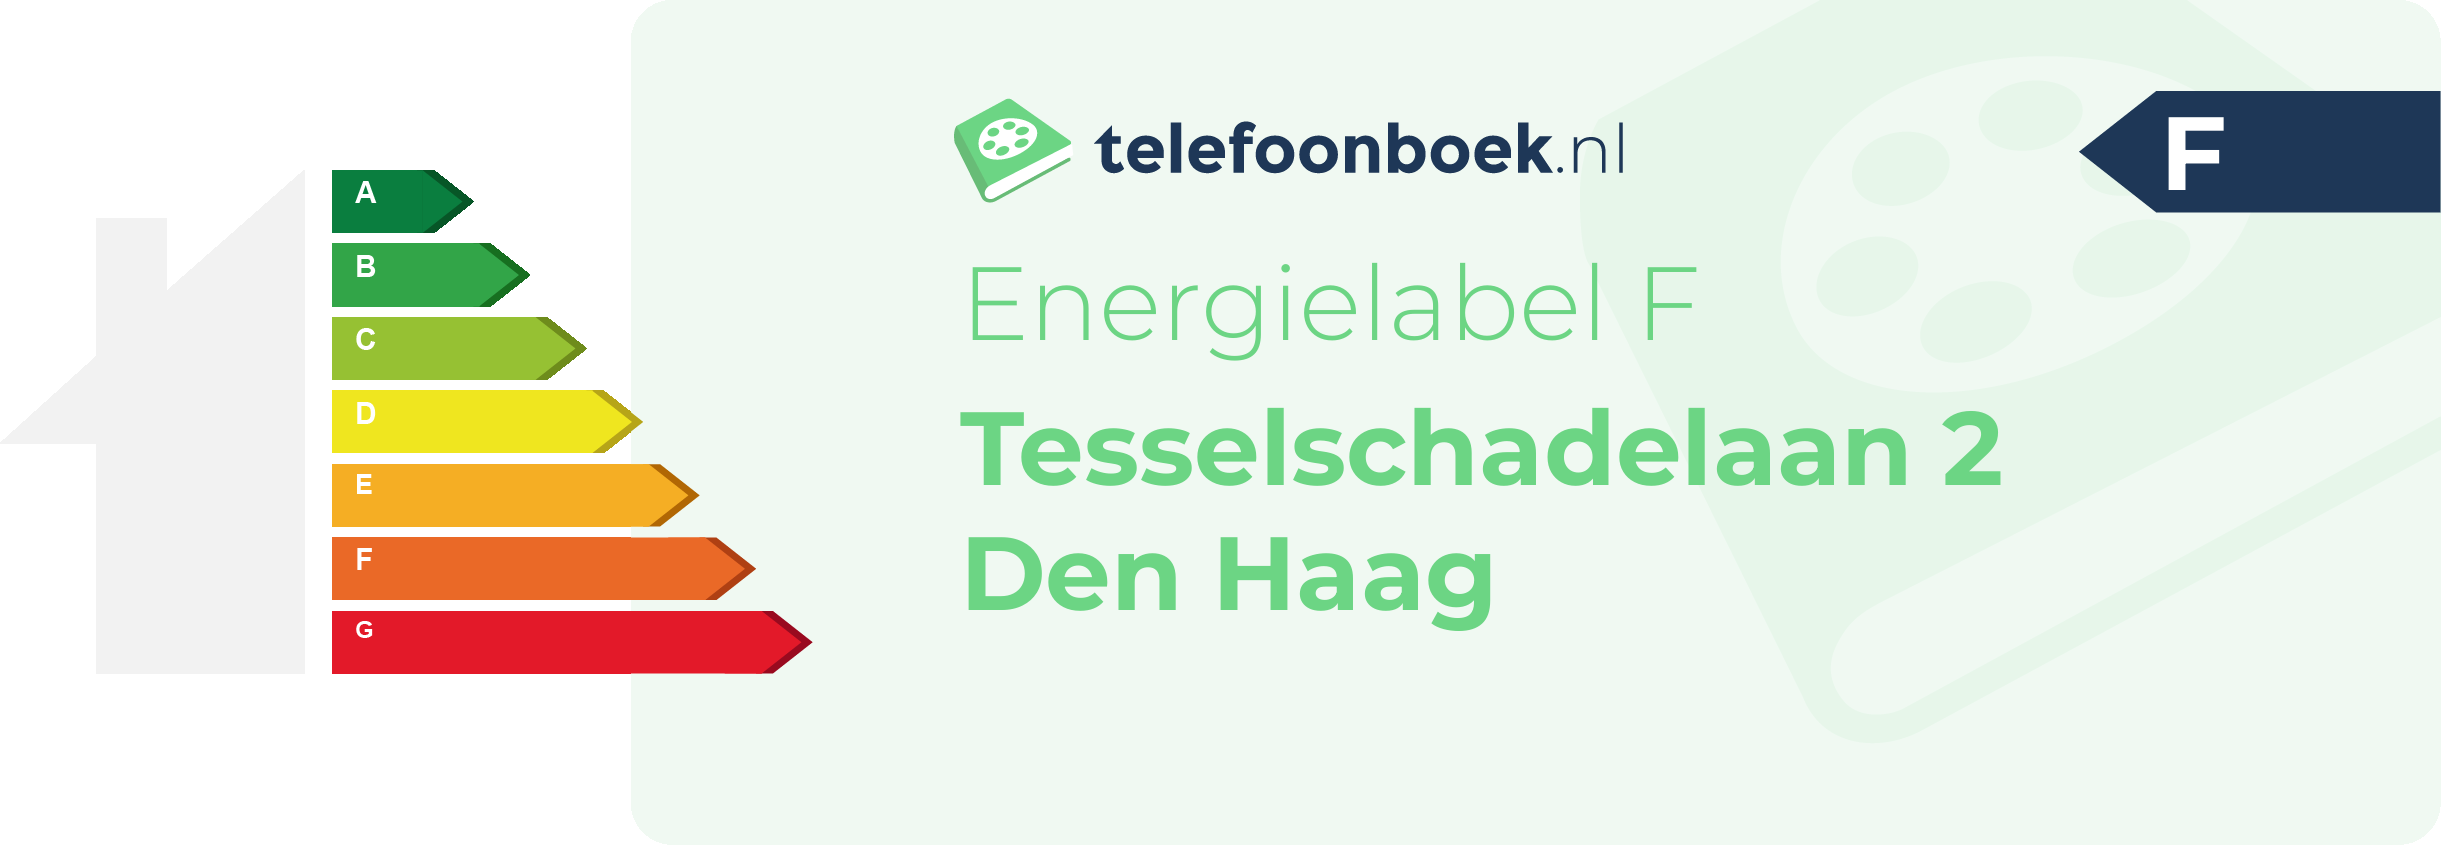 Energielabel Tesselschadelaan 2 Den Haag